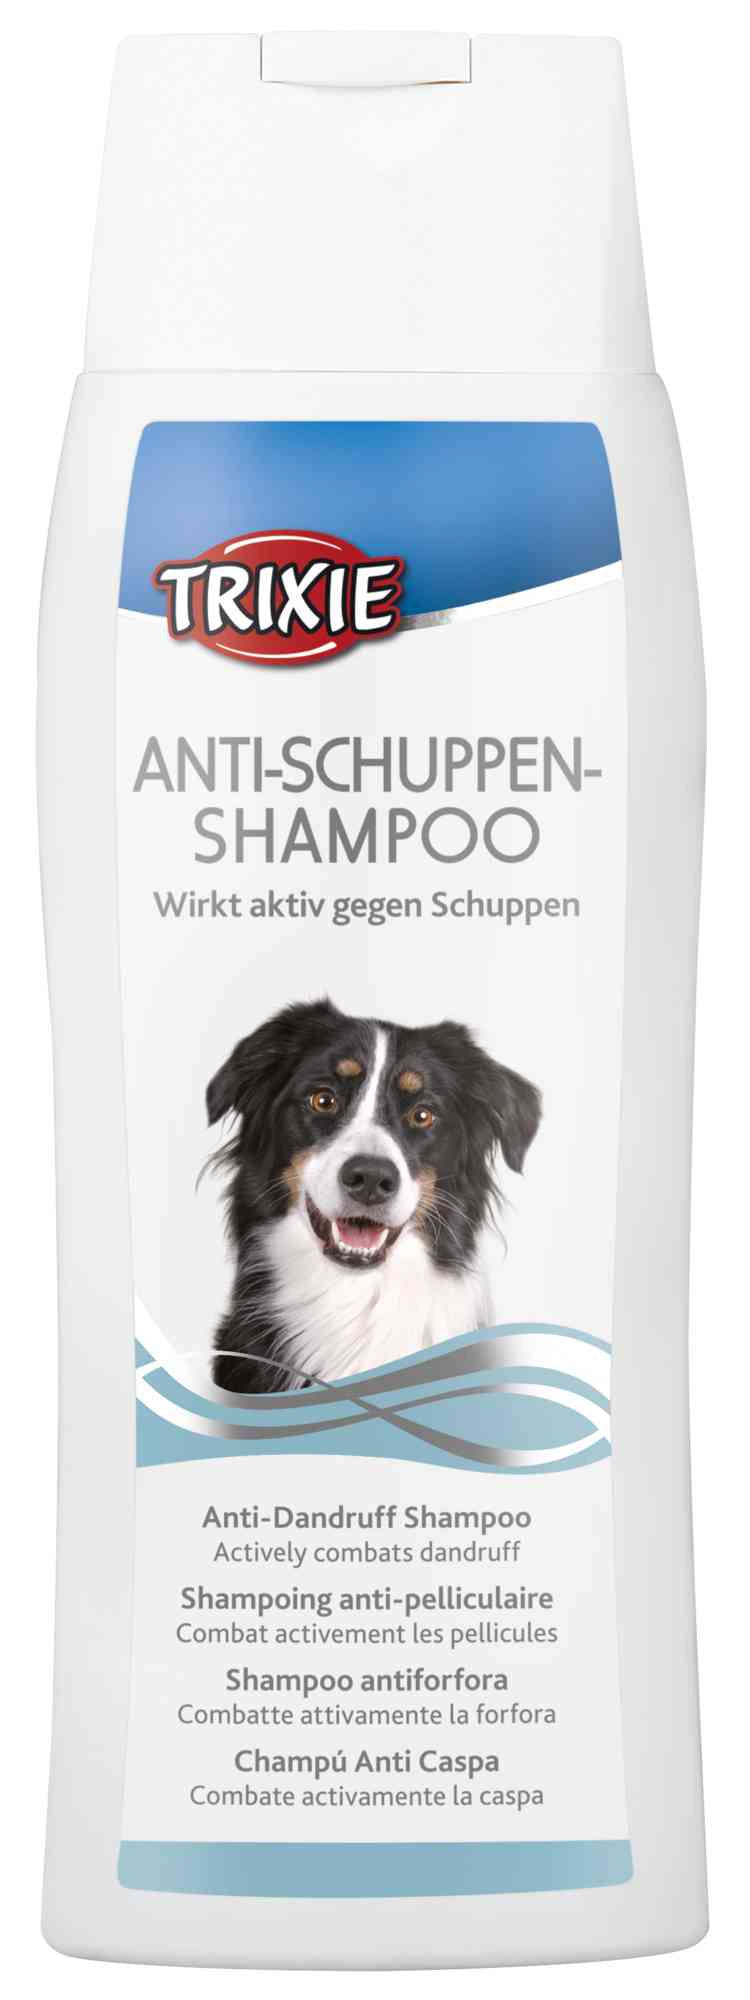 Anti-Dandruff Shampoo - PetsCura